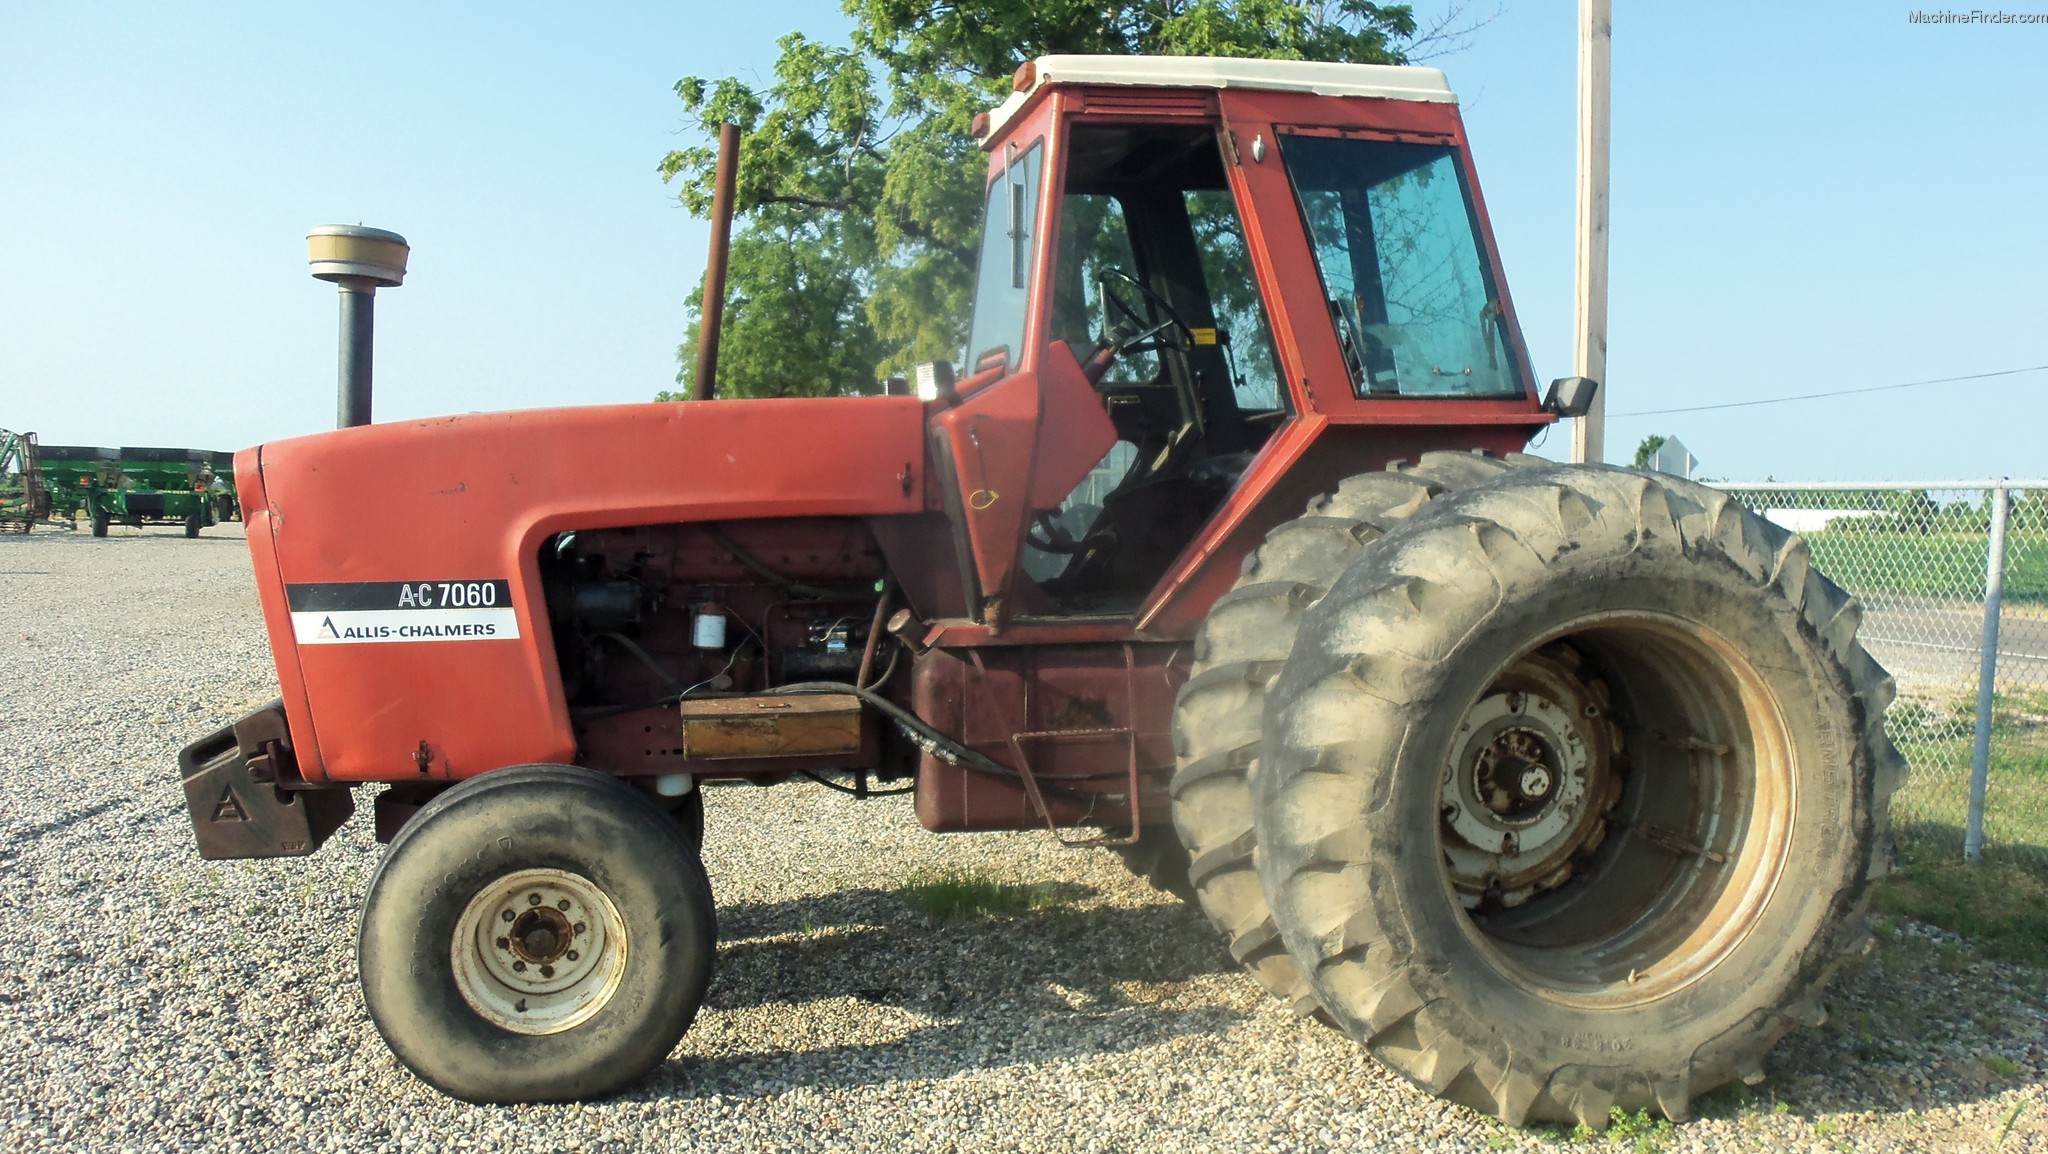 1978 Allis - Chalmers 7060 Tractors - Row Crop (+100hp) - John Deere ...